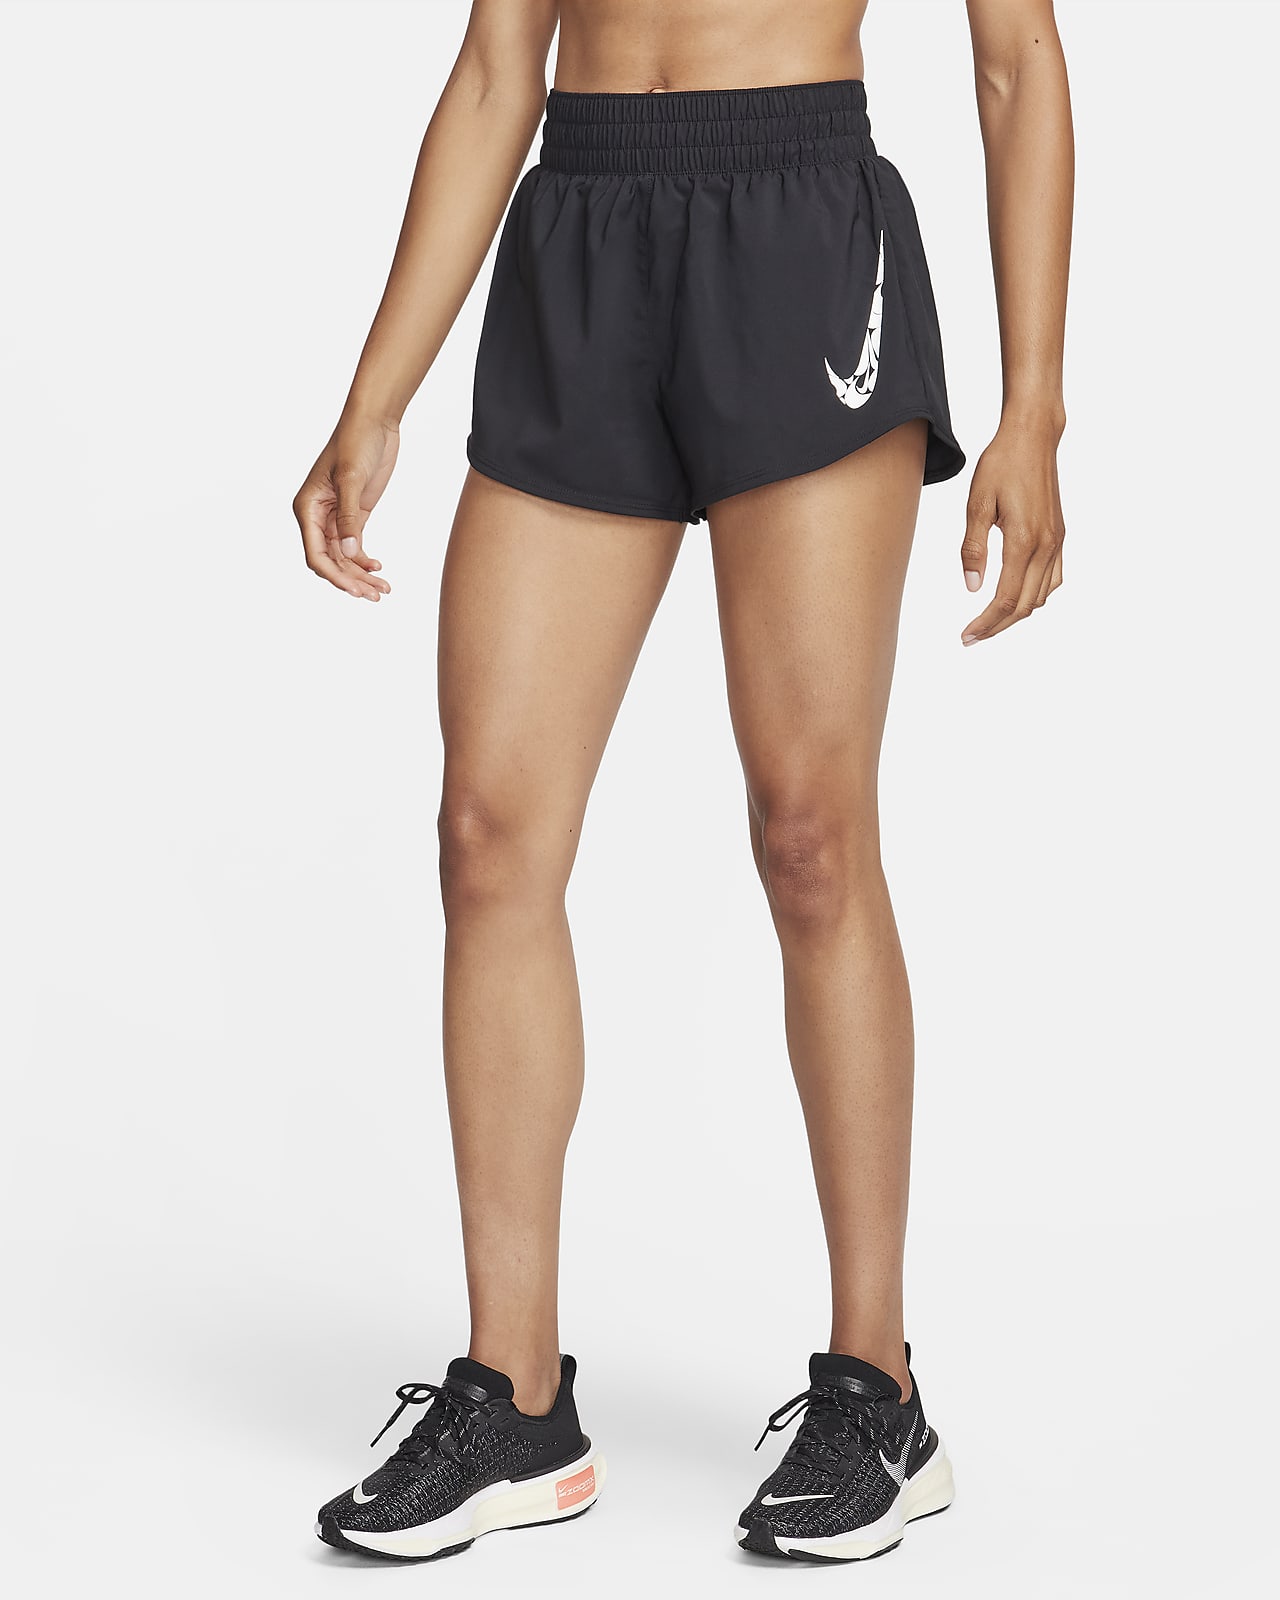 Dámské 8cm kraťasy Dri-FIT Nike One se středně vysokým pasem a všitými kalhotkami